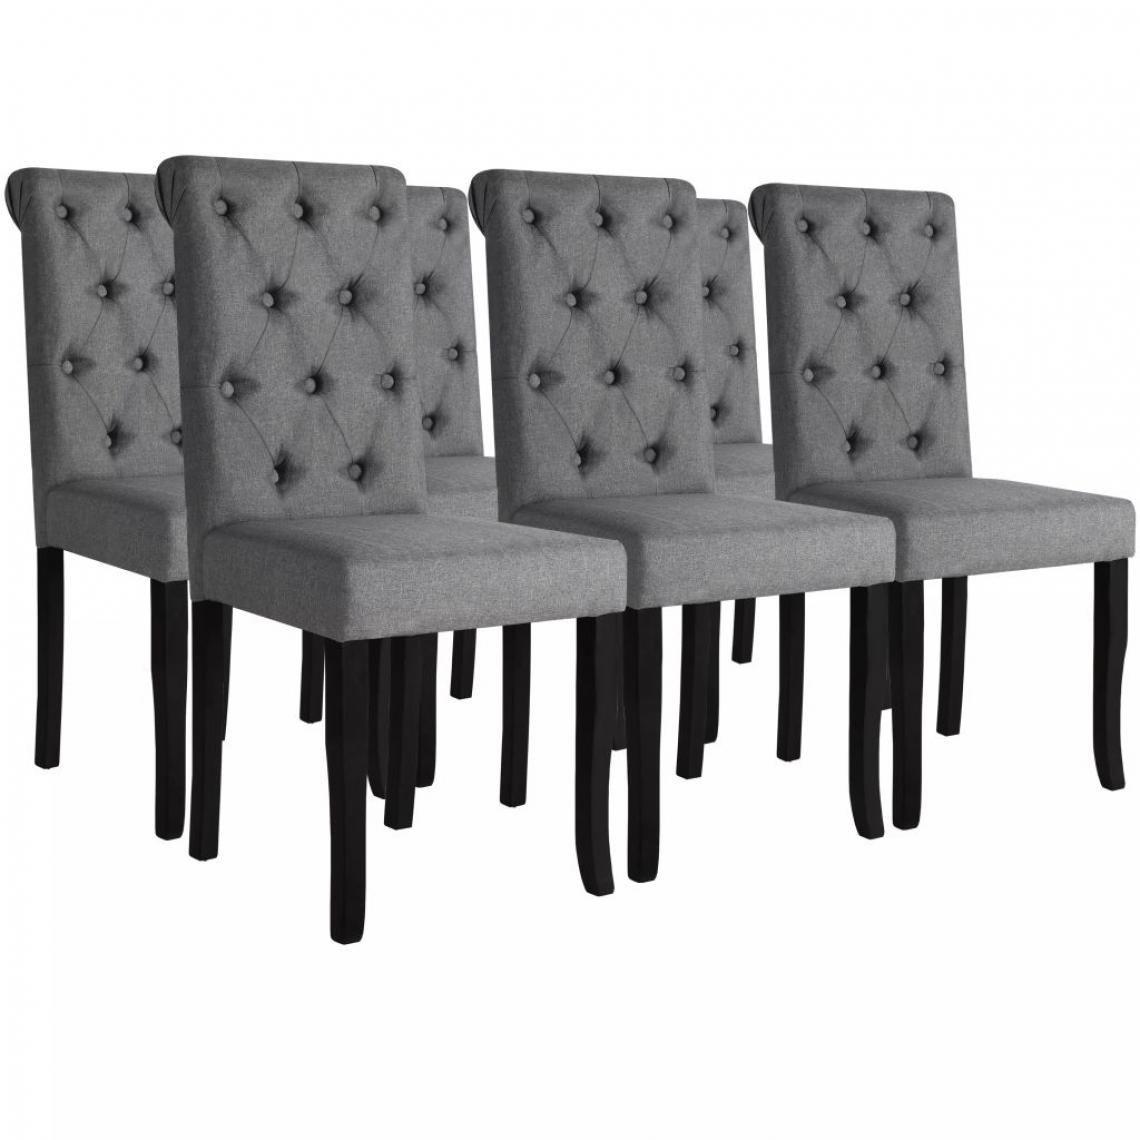 Decoshop26 - Lot de 6 chaises de salle à manger cuisine design élégant et intemporel en tissu gris foncé CDS022443 - Chaises